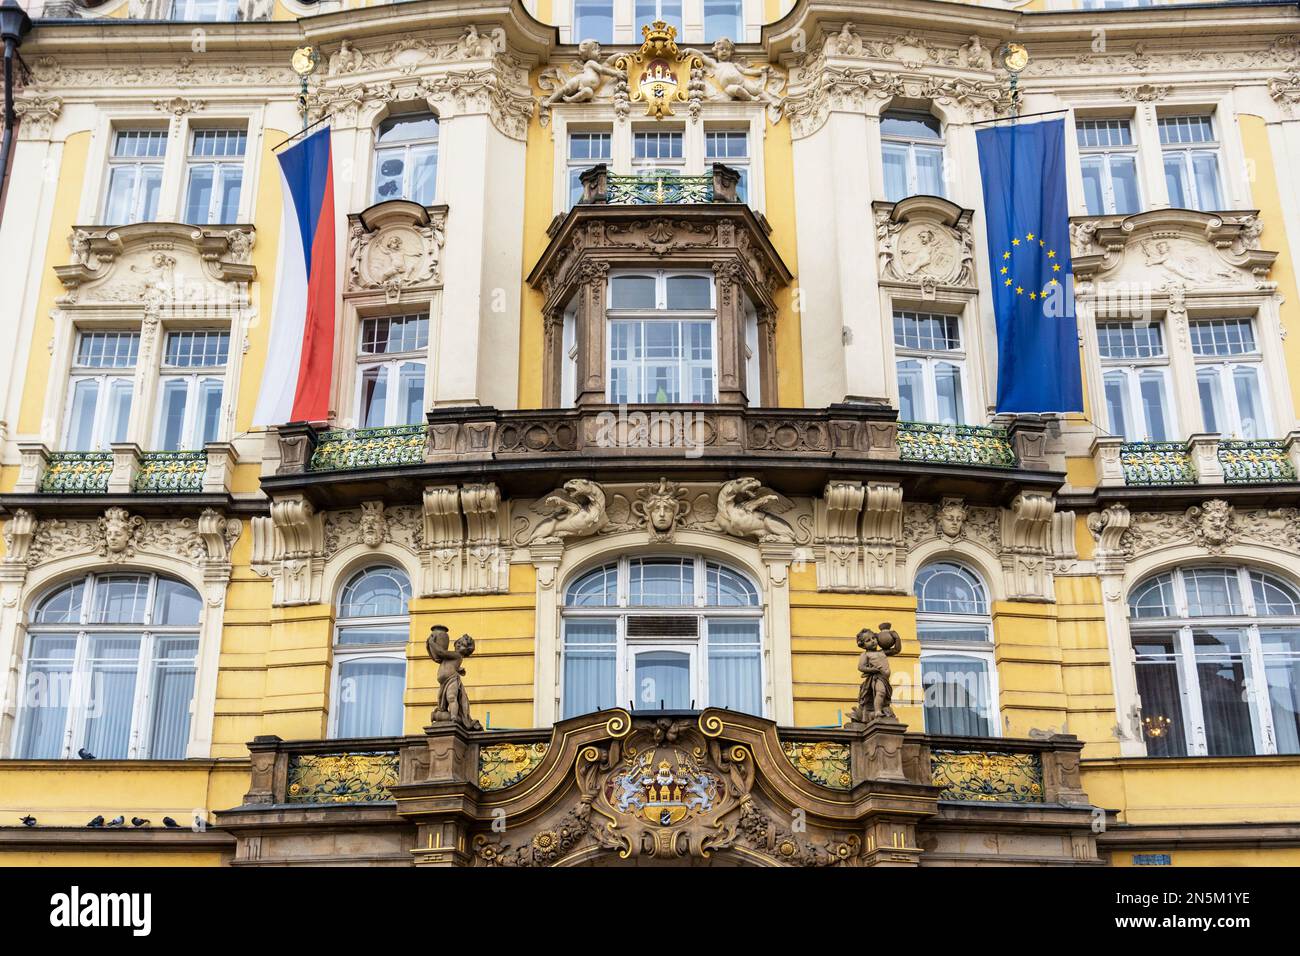 Dettaglio architettonico di un edificio storico nel centro di Praga, Praga, Repubblica Ceca Foto Stock